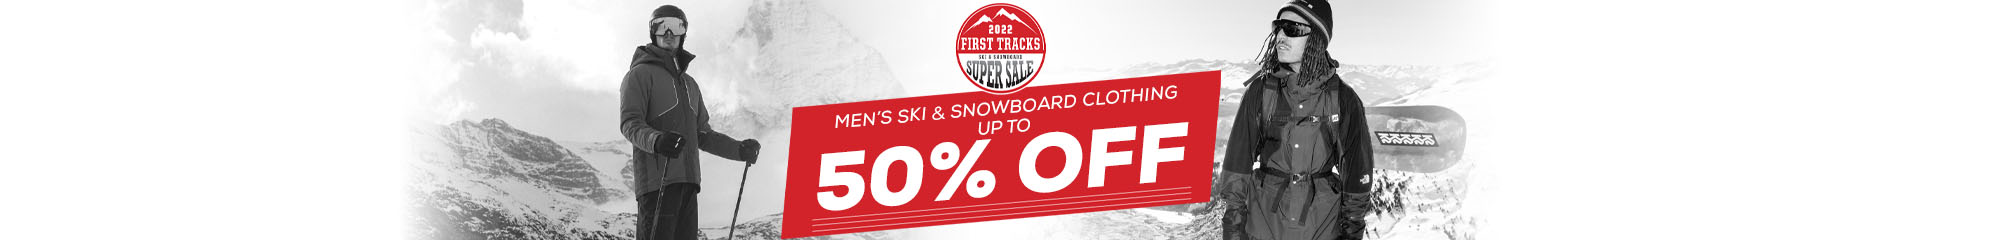 Shop Men's Ski Clothing Deals